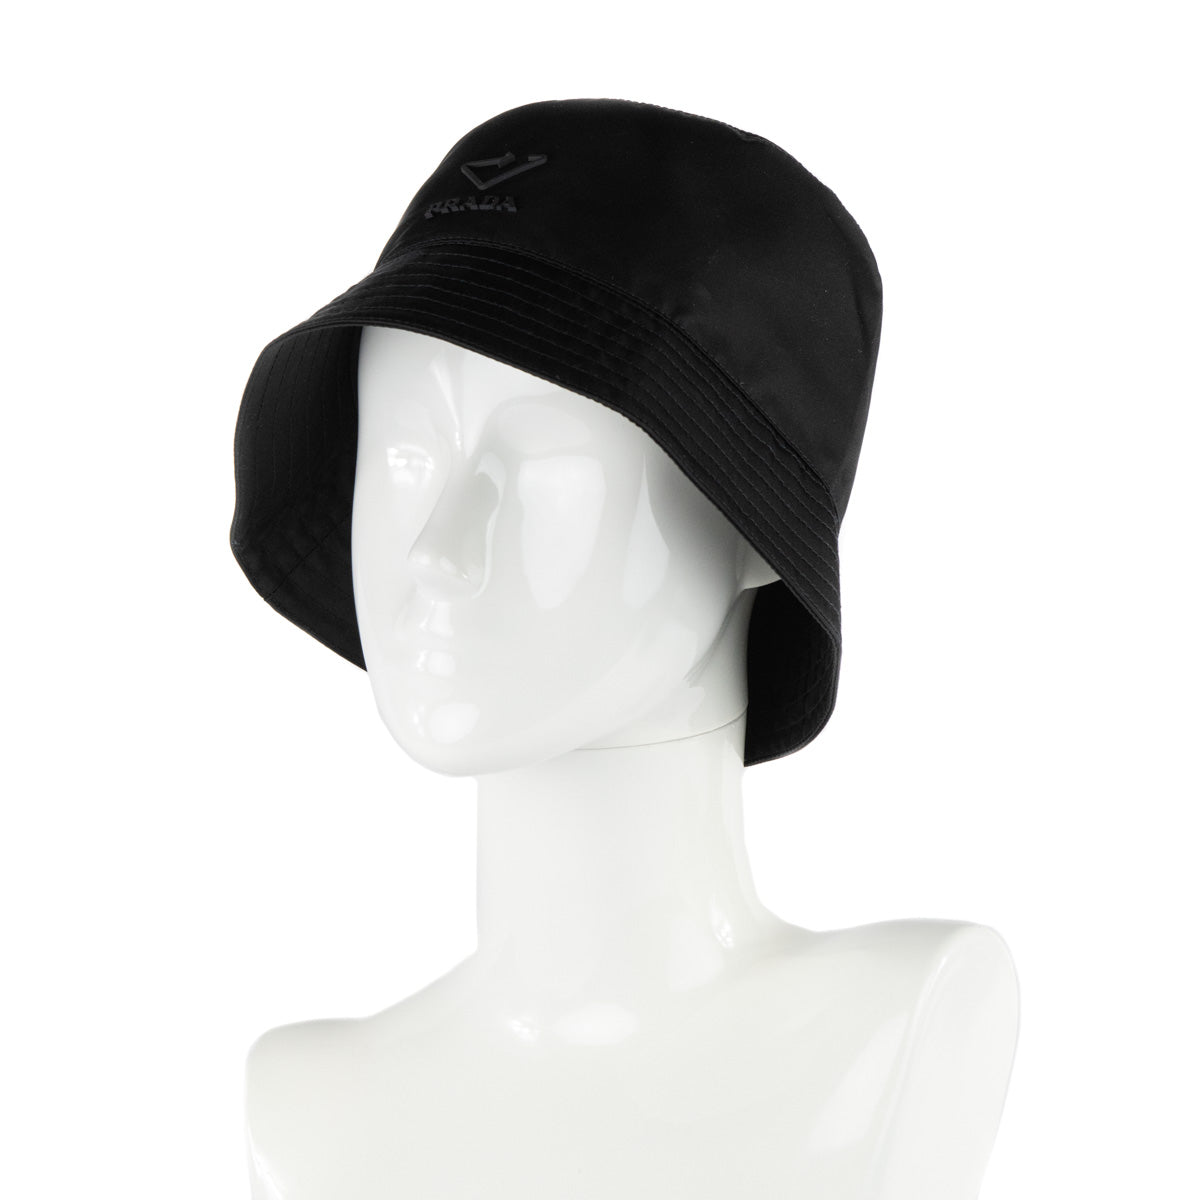 HBX - Make a statement in the Prada Bucket Hat. Shop the